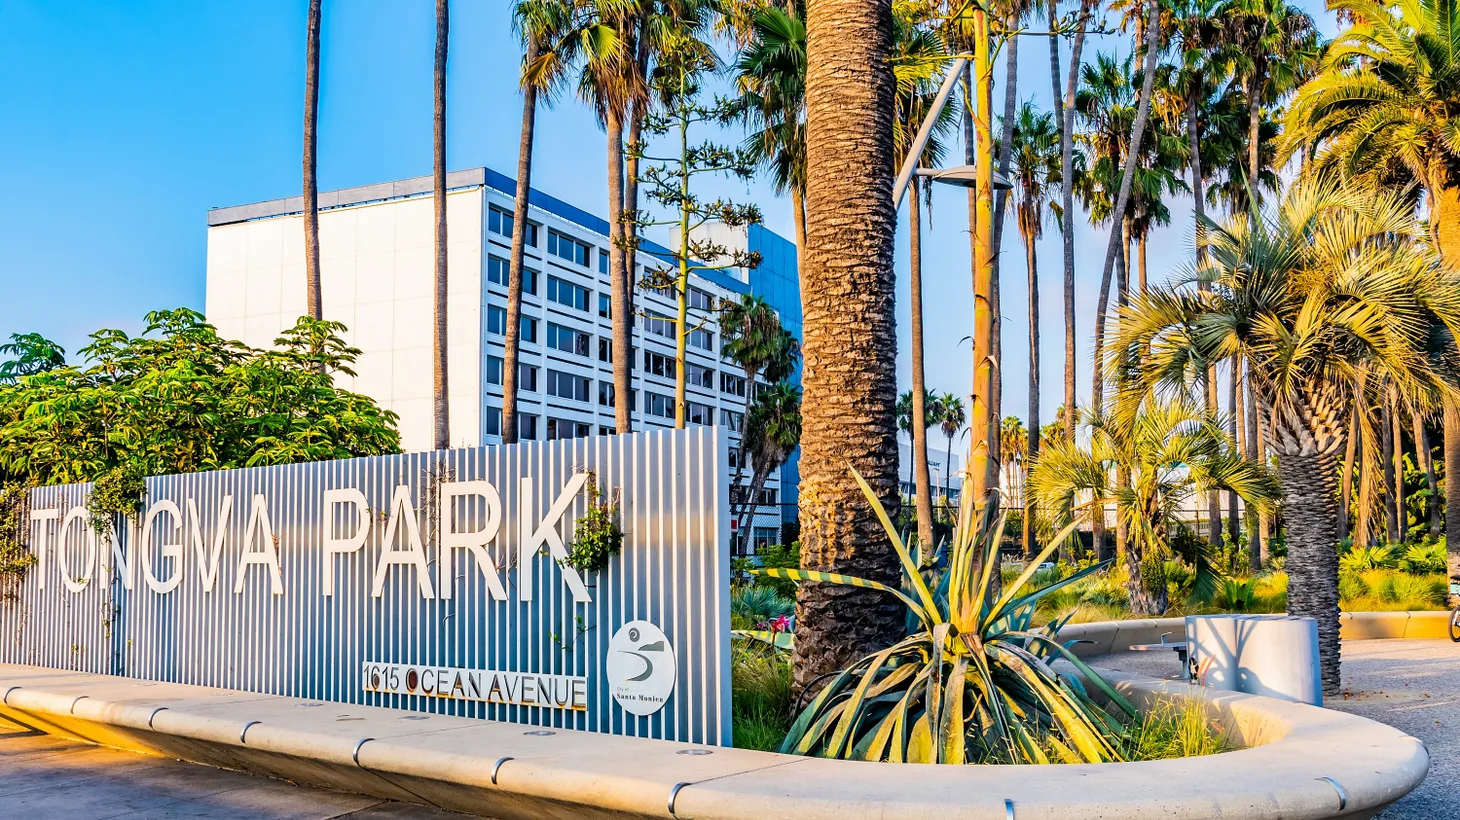 Tongva Park is located in Santa Monica.